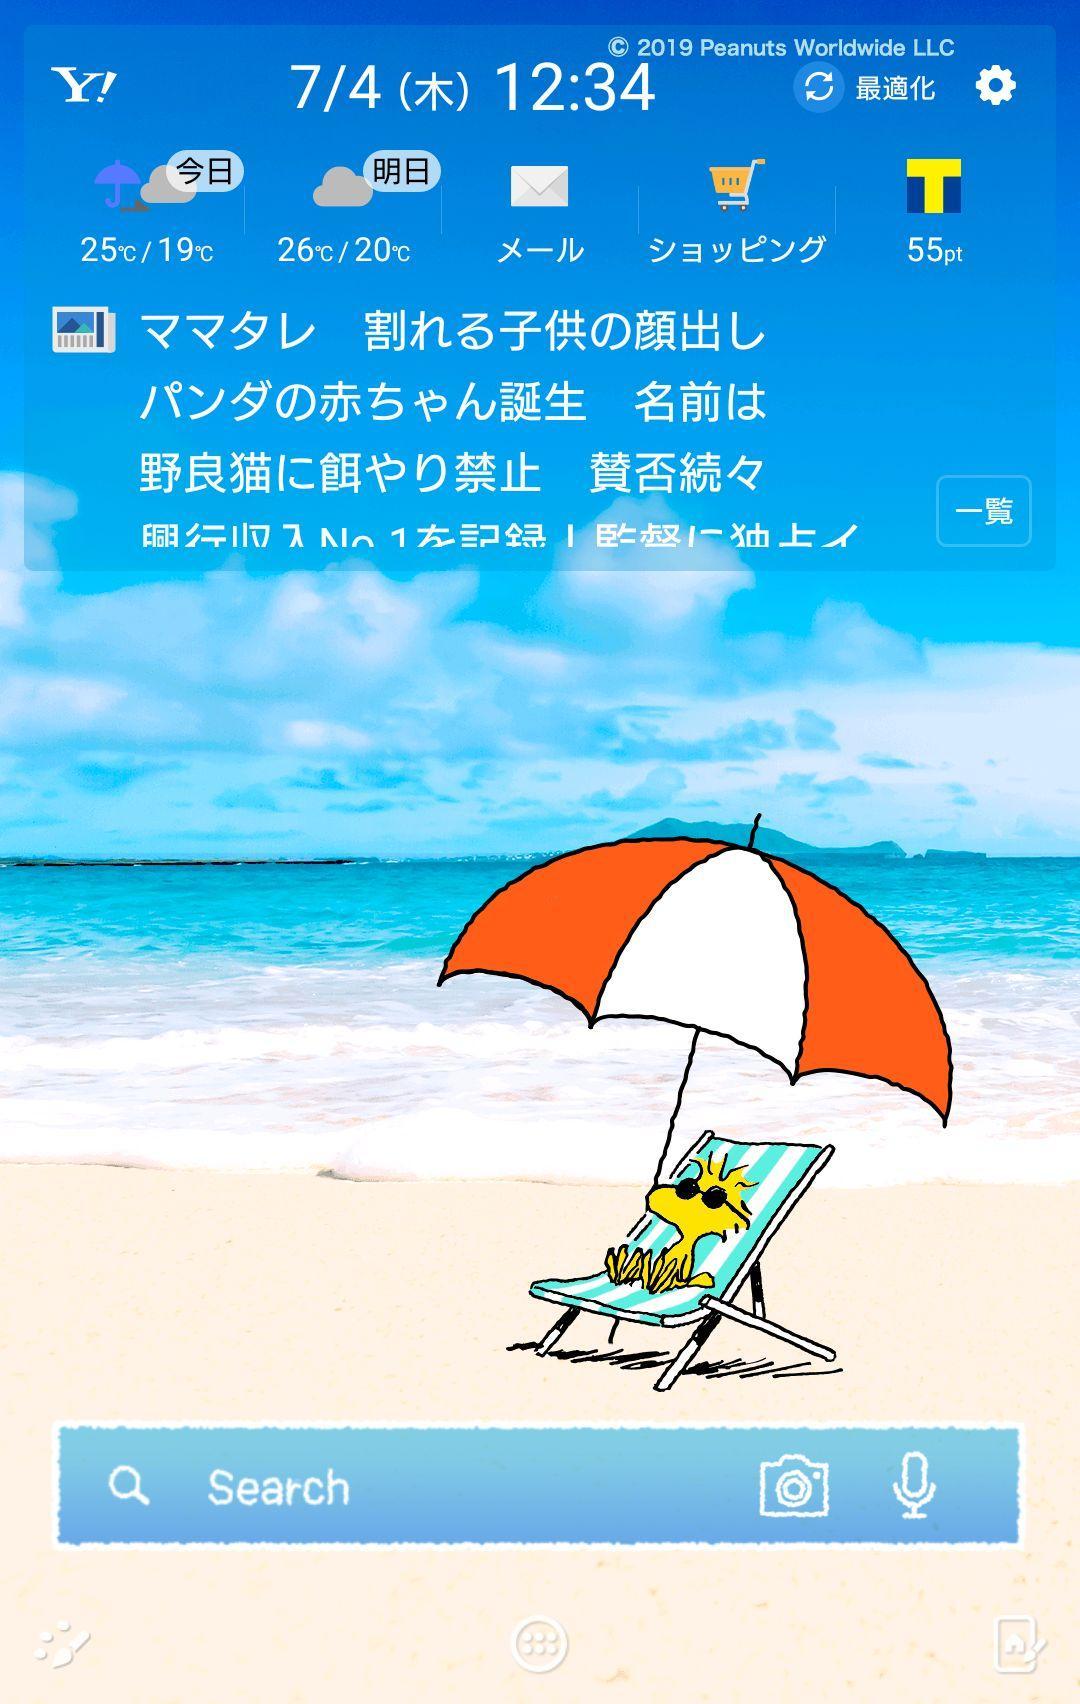 スヌーピー 壁紙きせかえ 夏の海 Apk 9 0 For Android Download スヌーピー 壁紙きせかえ 夏の海 Apk Latest Version From Apkfab Com